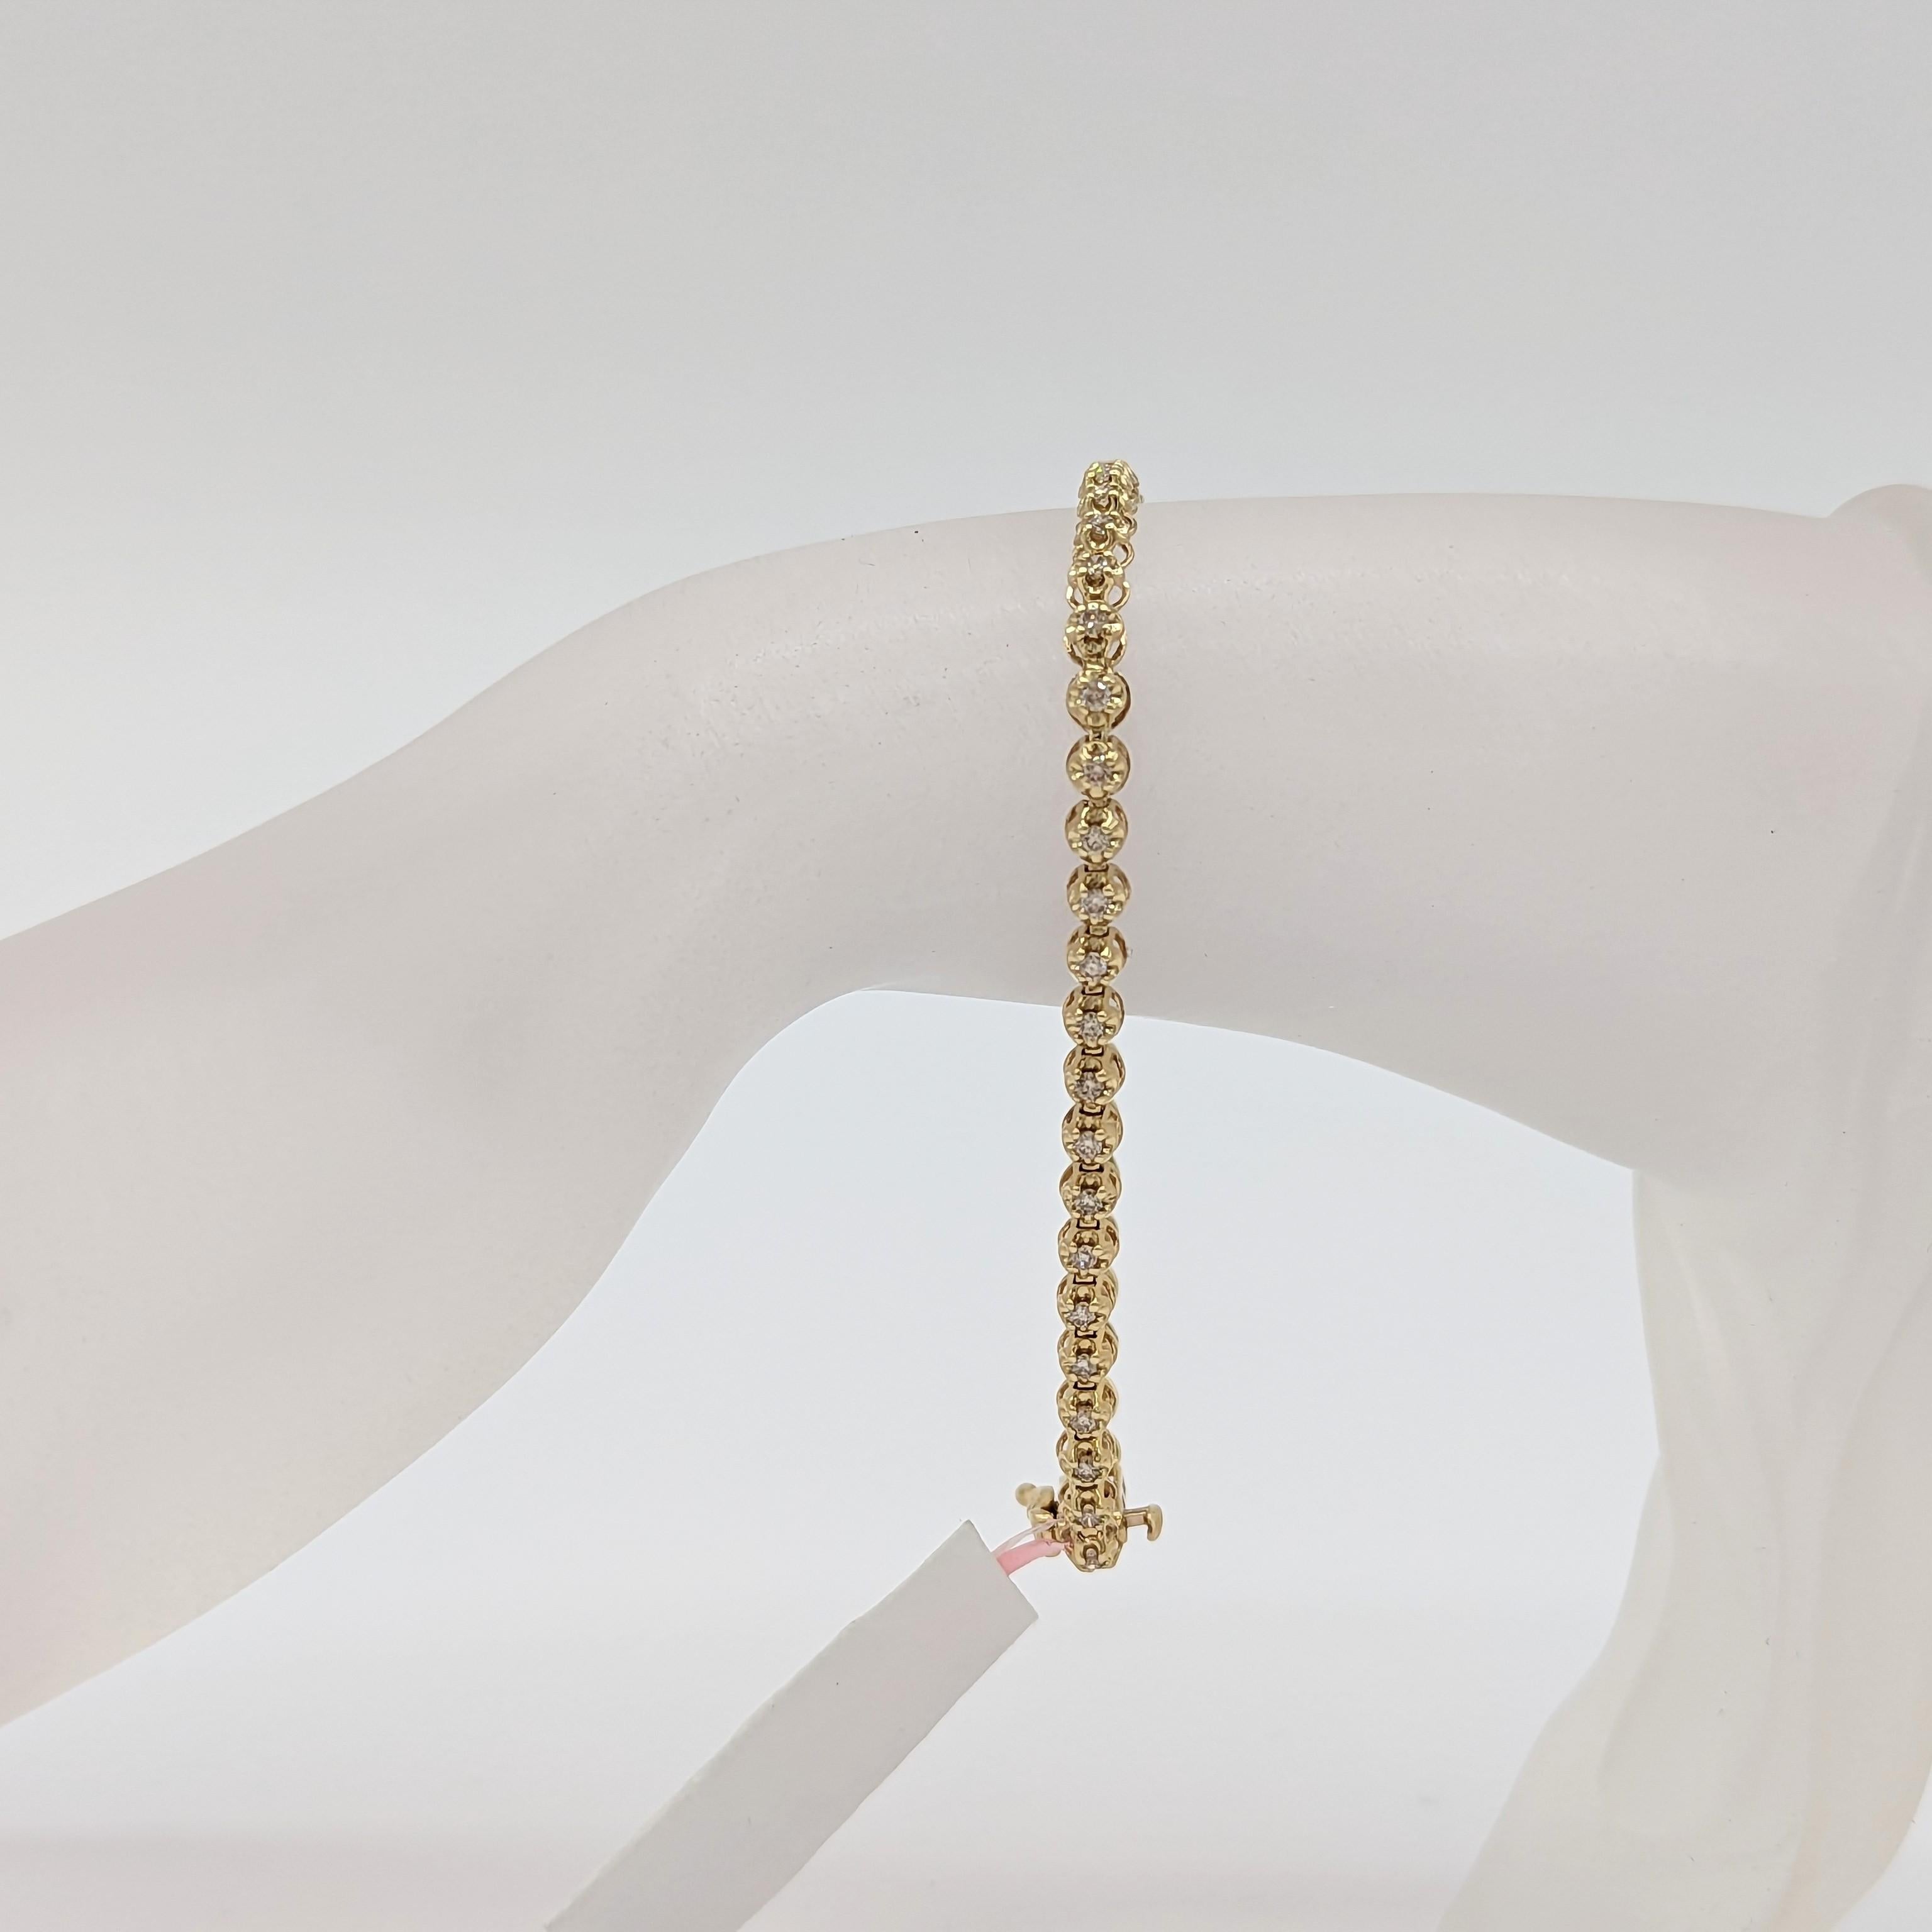 De beaux diamants ronds de bonne qualité, blancs et brillants dans ce bracelet qui est fait à la main en or jaune 14k.  La longueur est de 7,25